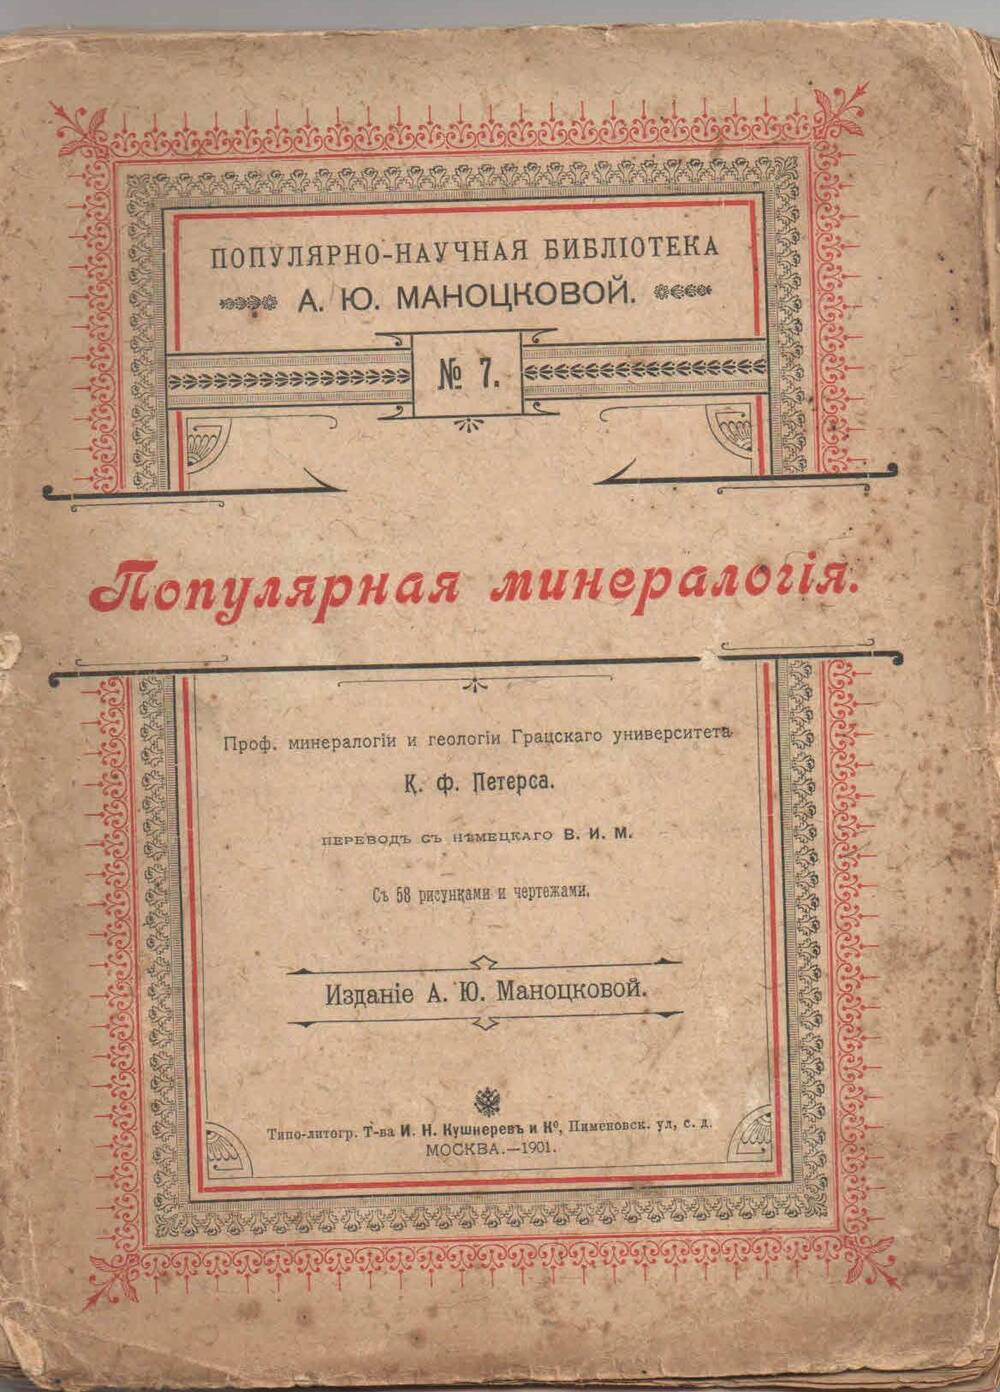 Книга: Петерс К. Ф. Популярная минералогия. СПб, 1901. - 158 с.